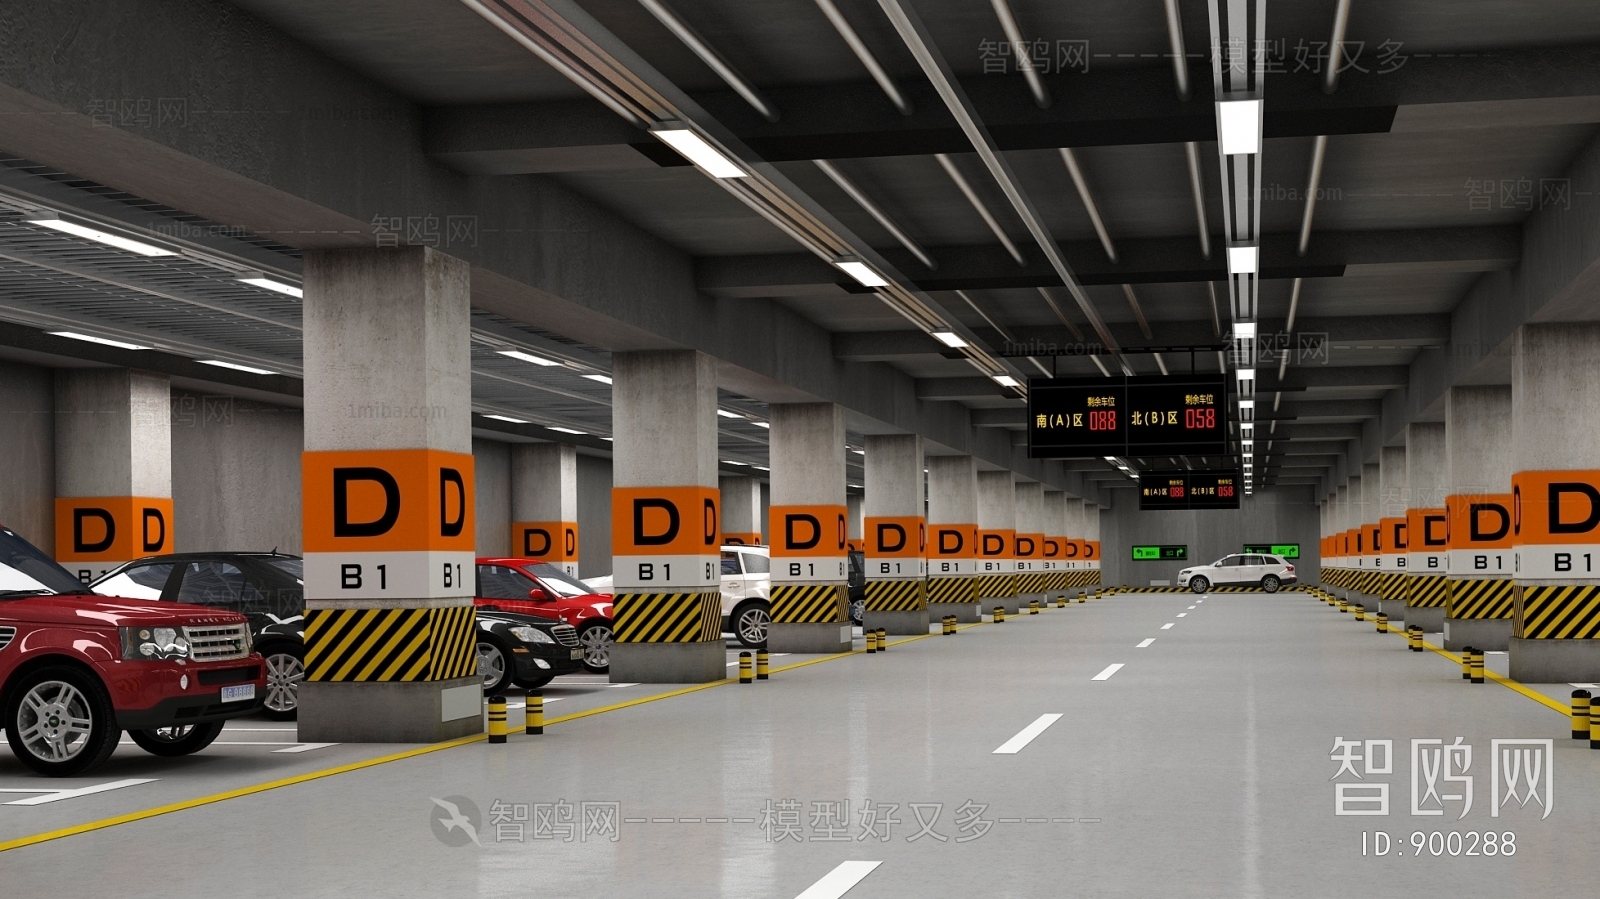 Modern Underground Parking Lot